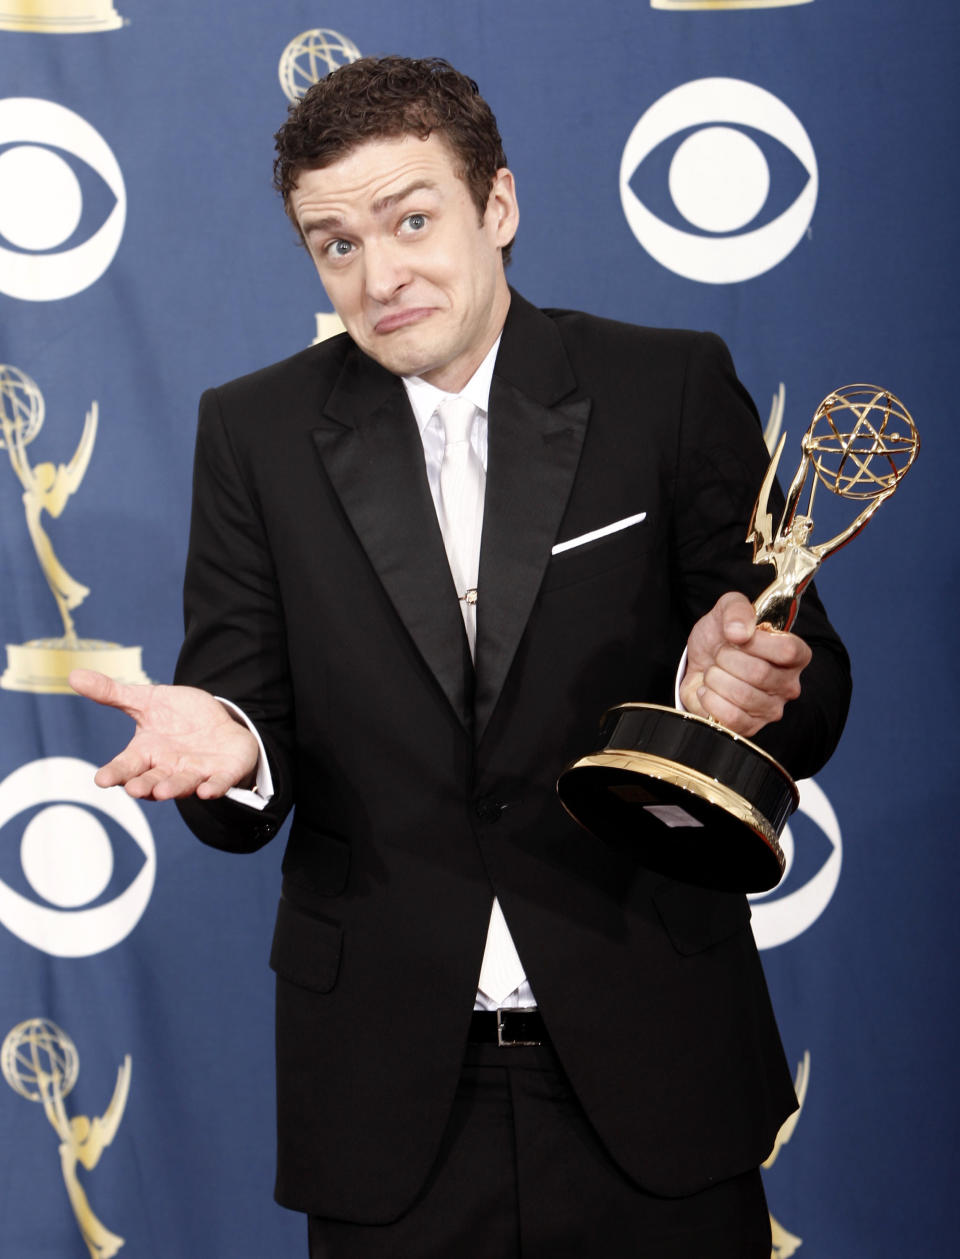 ARCHIVO - Justin Timberlake quien apareció en el programa de televisión "Saturday Night Live" con el premio al mejor actor invitado para una serie de comedia tras bambalinas en la 61a entrega de los Premios Primetime Emmy el domingo 20 de septiembre de 2009 en Los Ángeles. (Foto AP/Matt Sayles, archivo)